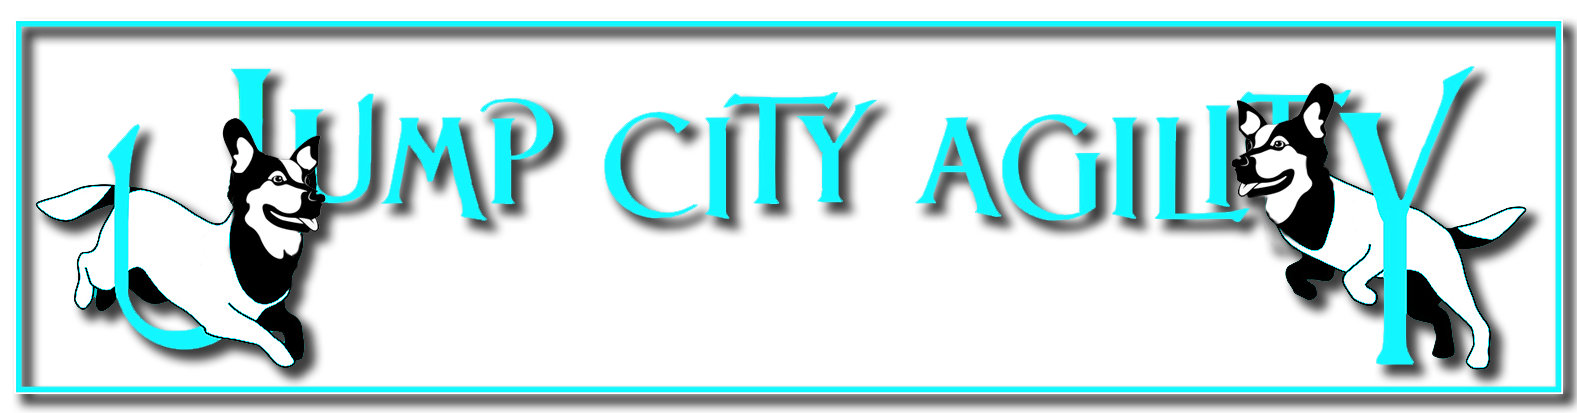 Jump city Agility Banner